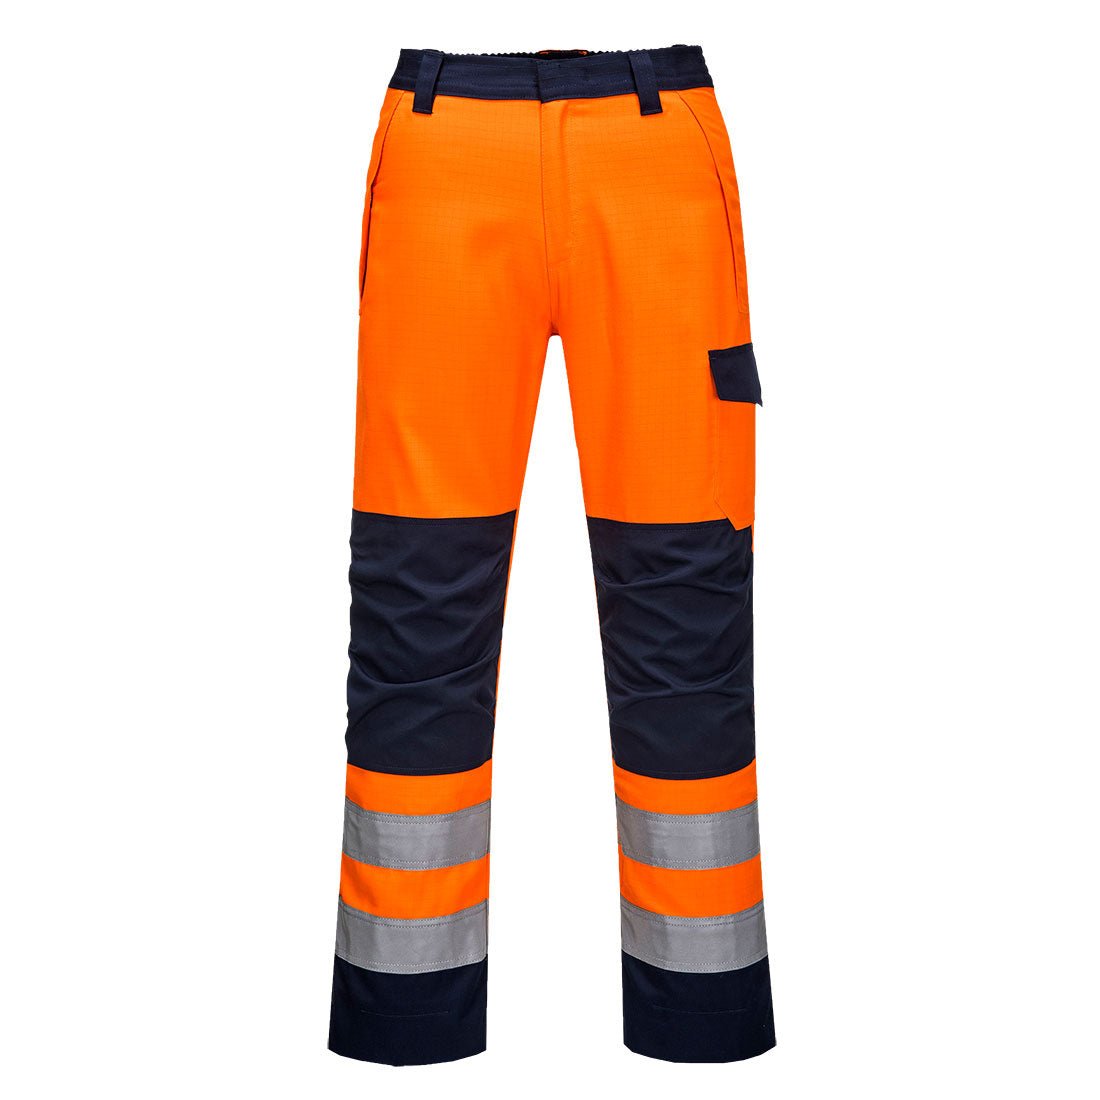 Modaflame RIS Orange/Marineblau Trouser - arbeitskleidung-gmbh